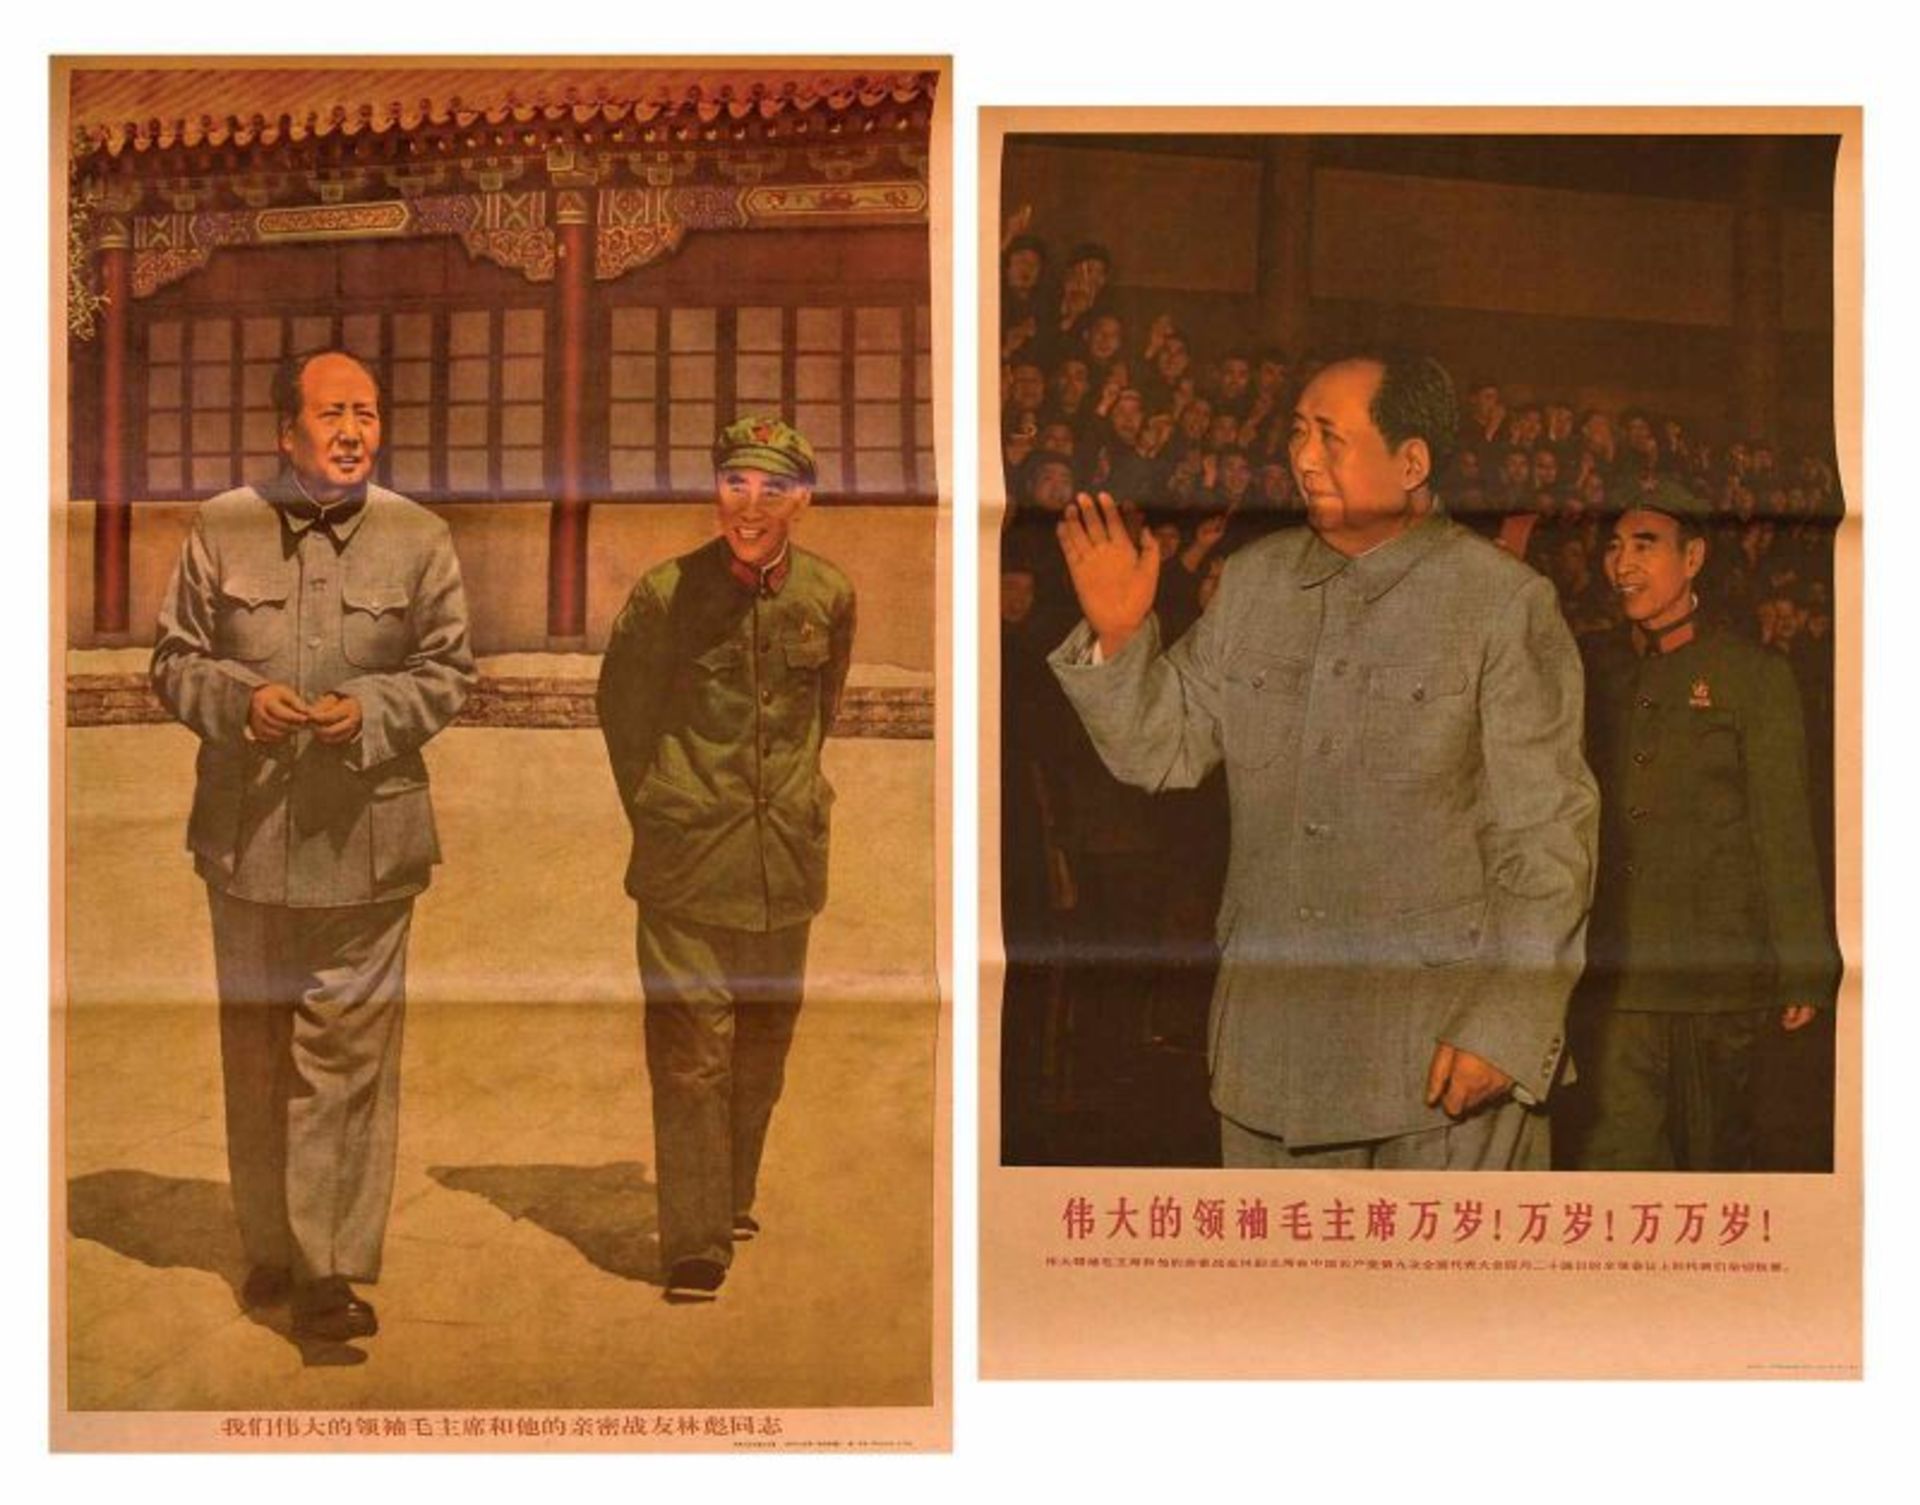 Seis carteles propagandísticos chinos de Mao Zedong, de mediados del siglo XX 76x52 cm - Bild 2 aus 3